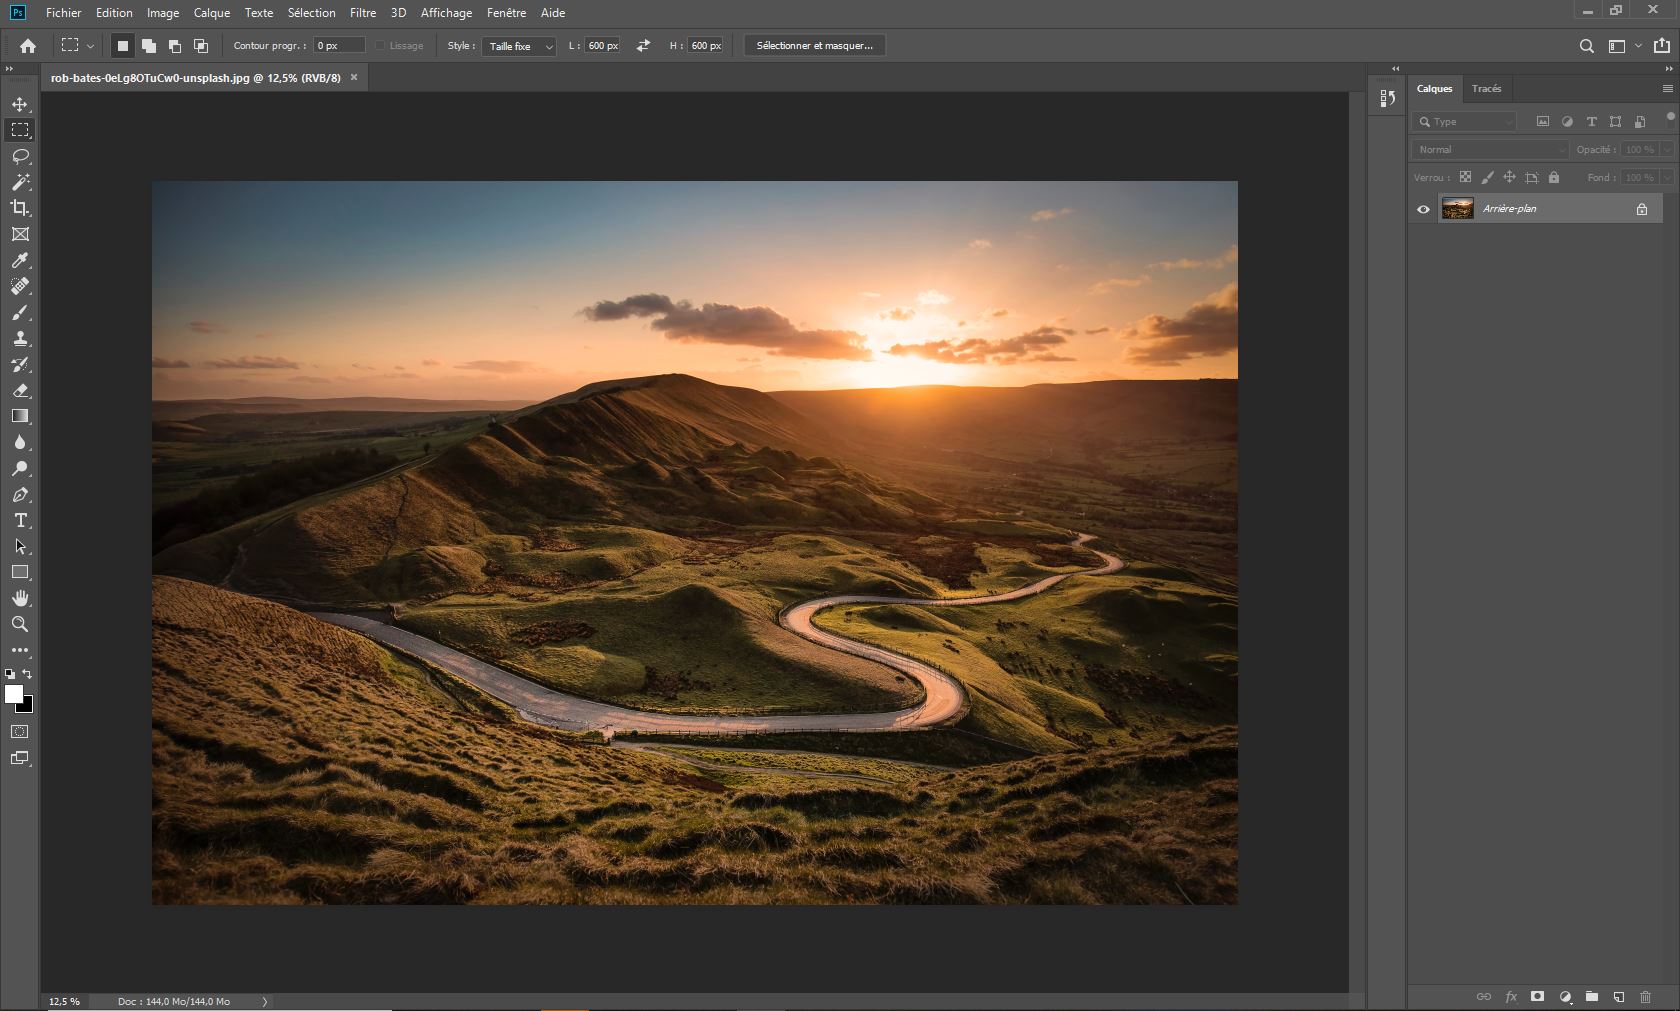 Capture d'écran du logiciel "Adobe Photoshop"